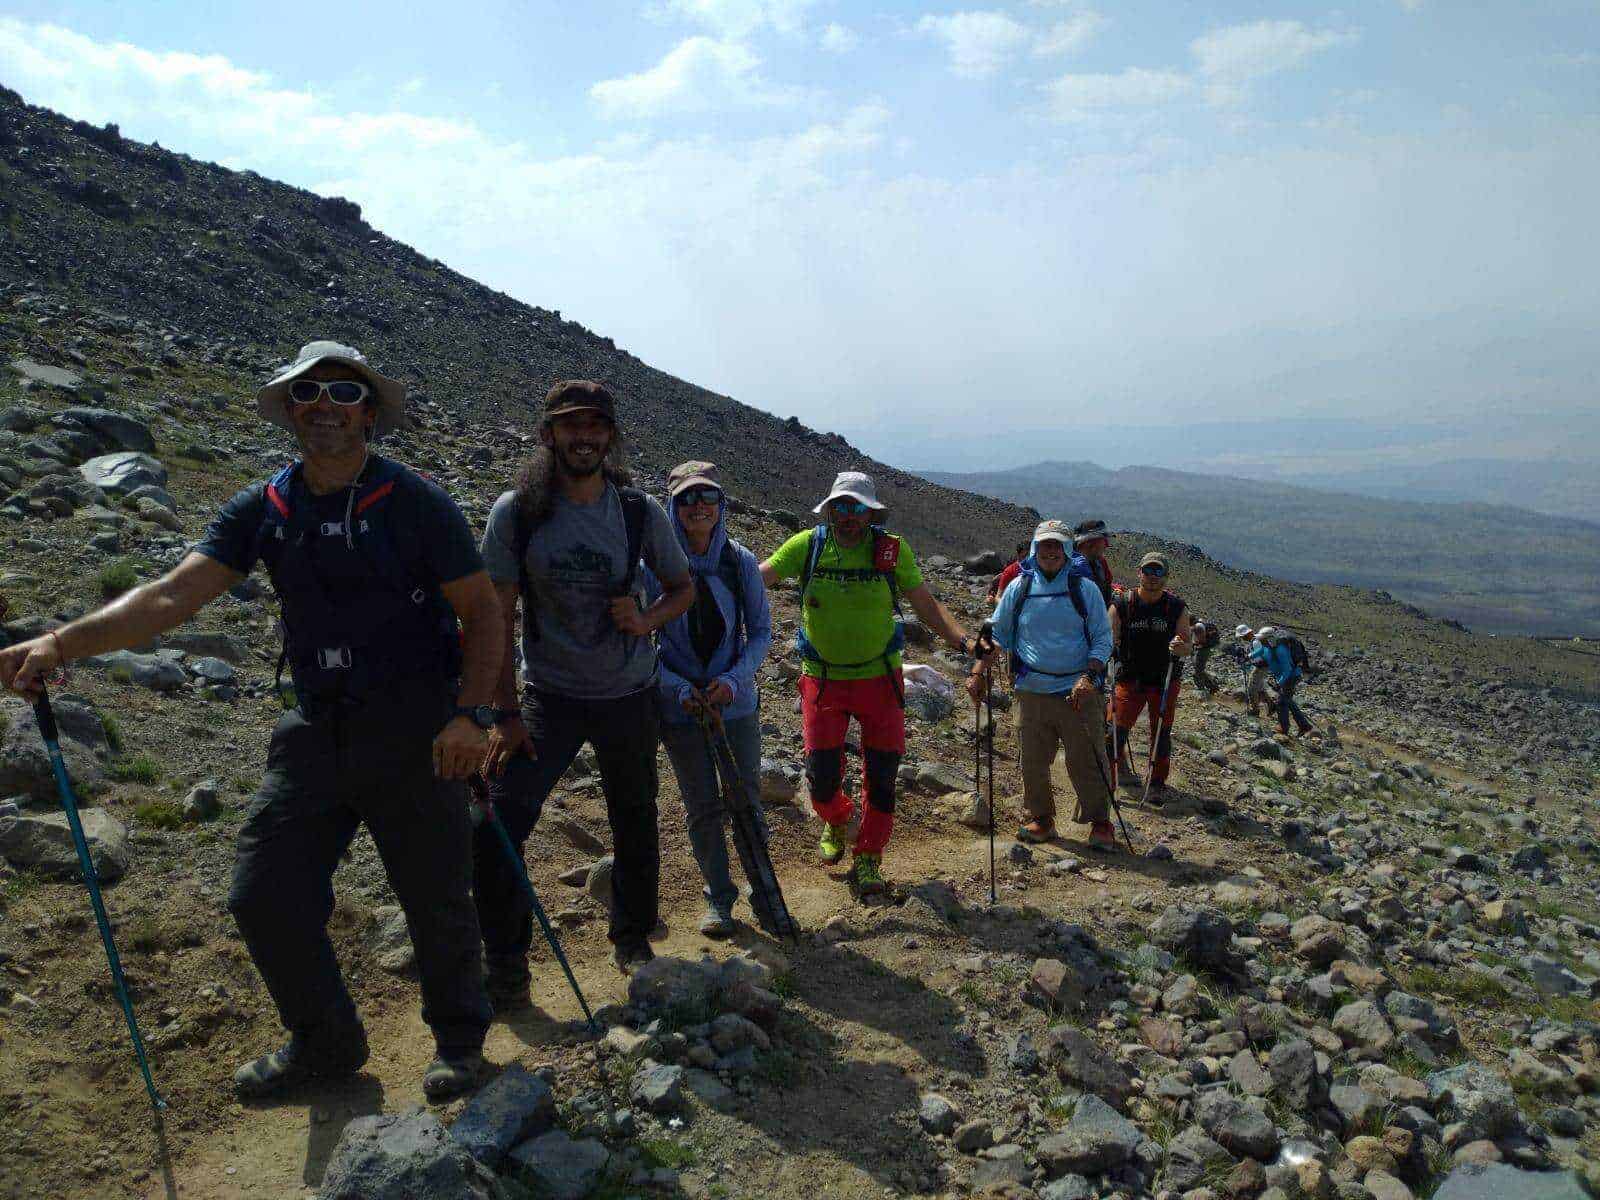 Góra Ararat w Turcji, czyli kierunek wyprawy, którą musisz zaliczyć! - szlak trudny, ale nagroda jest tego warta!